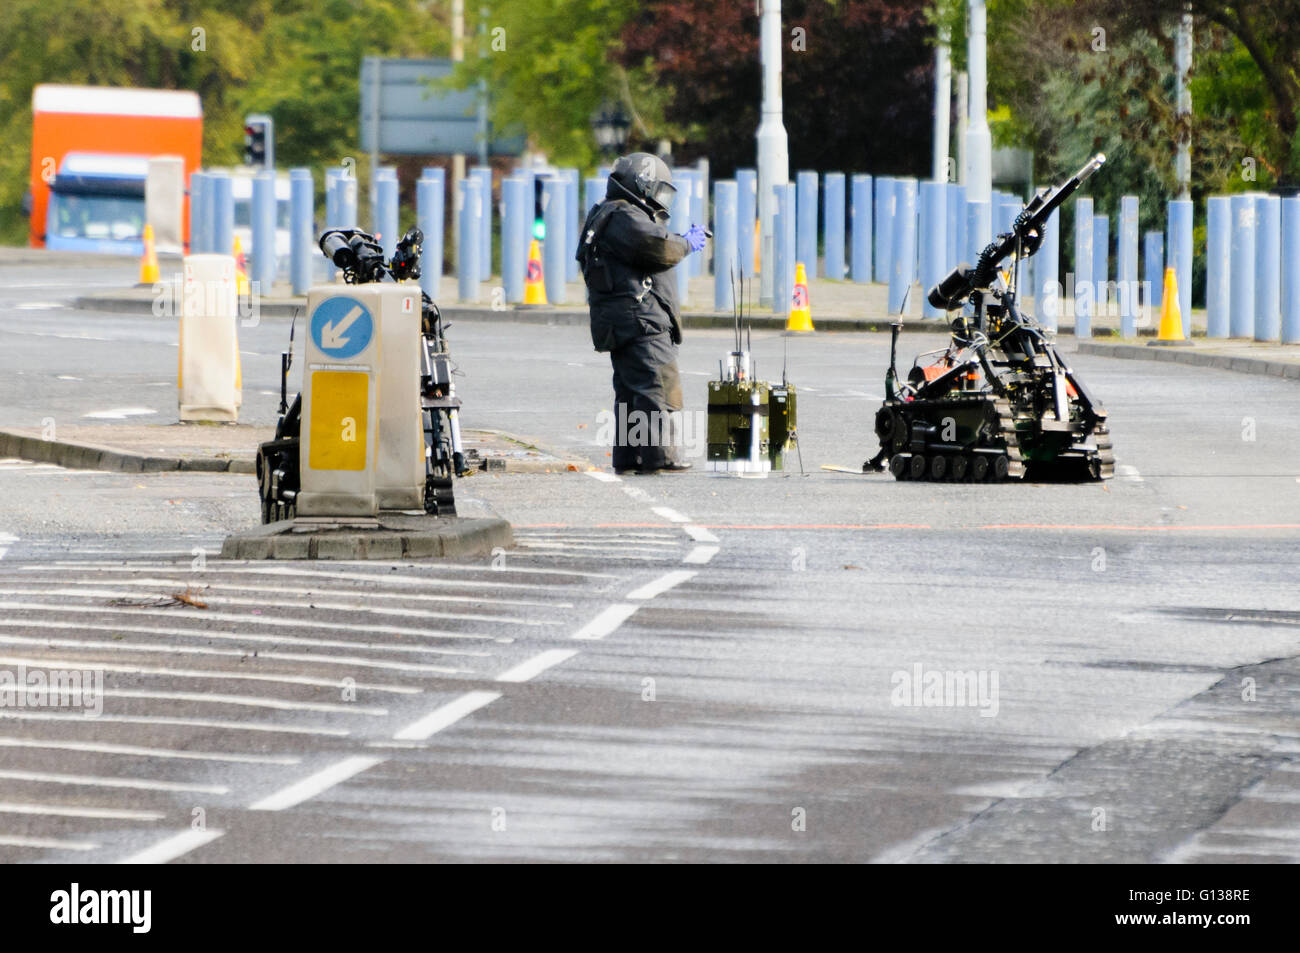 Belfast, Irlanda del Nord. 07 ott 2011 - Esercito Technical Officer effettuare esplosioni controllate su un dispositivo sospetto con l assistenza di due "carriola' controllata in remoto di robot, e segnale ECM attrezzature di impuntamento. Foto Stock